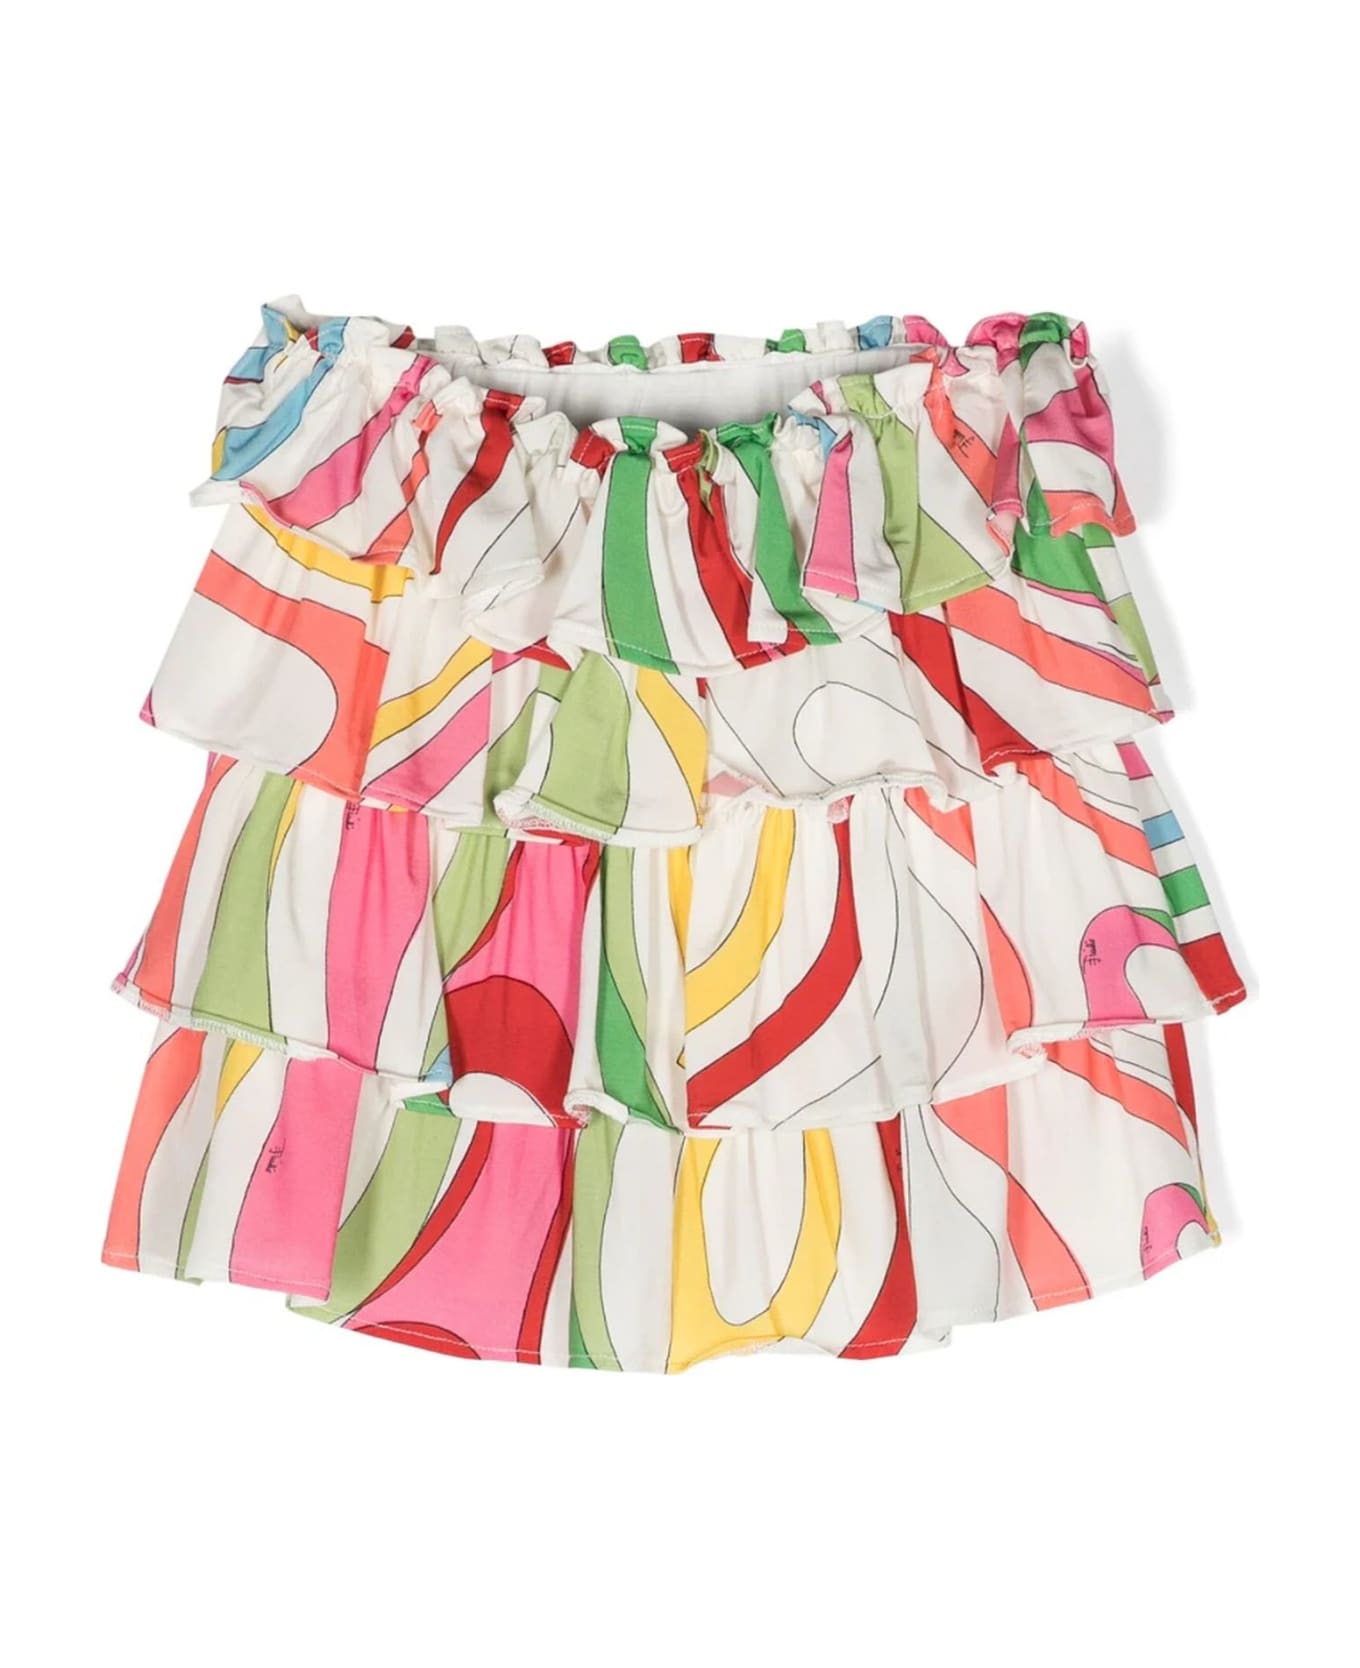 Pucci Multicolor Viscose Skirt - Multicolor